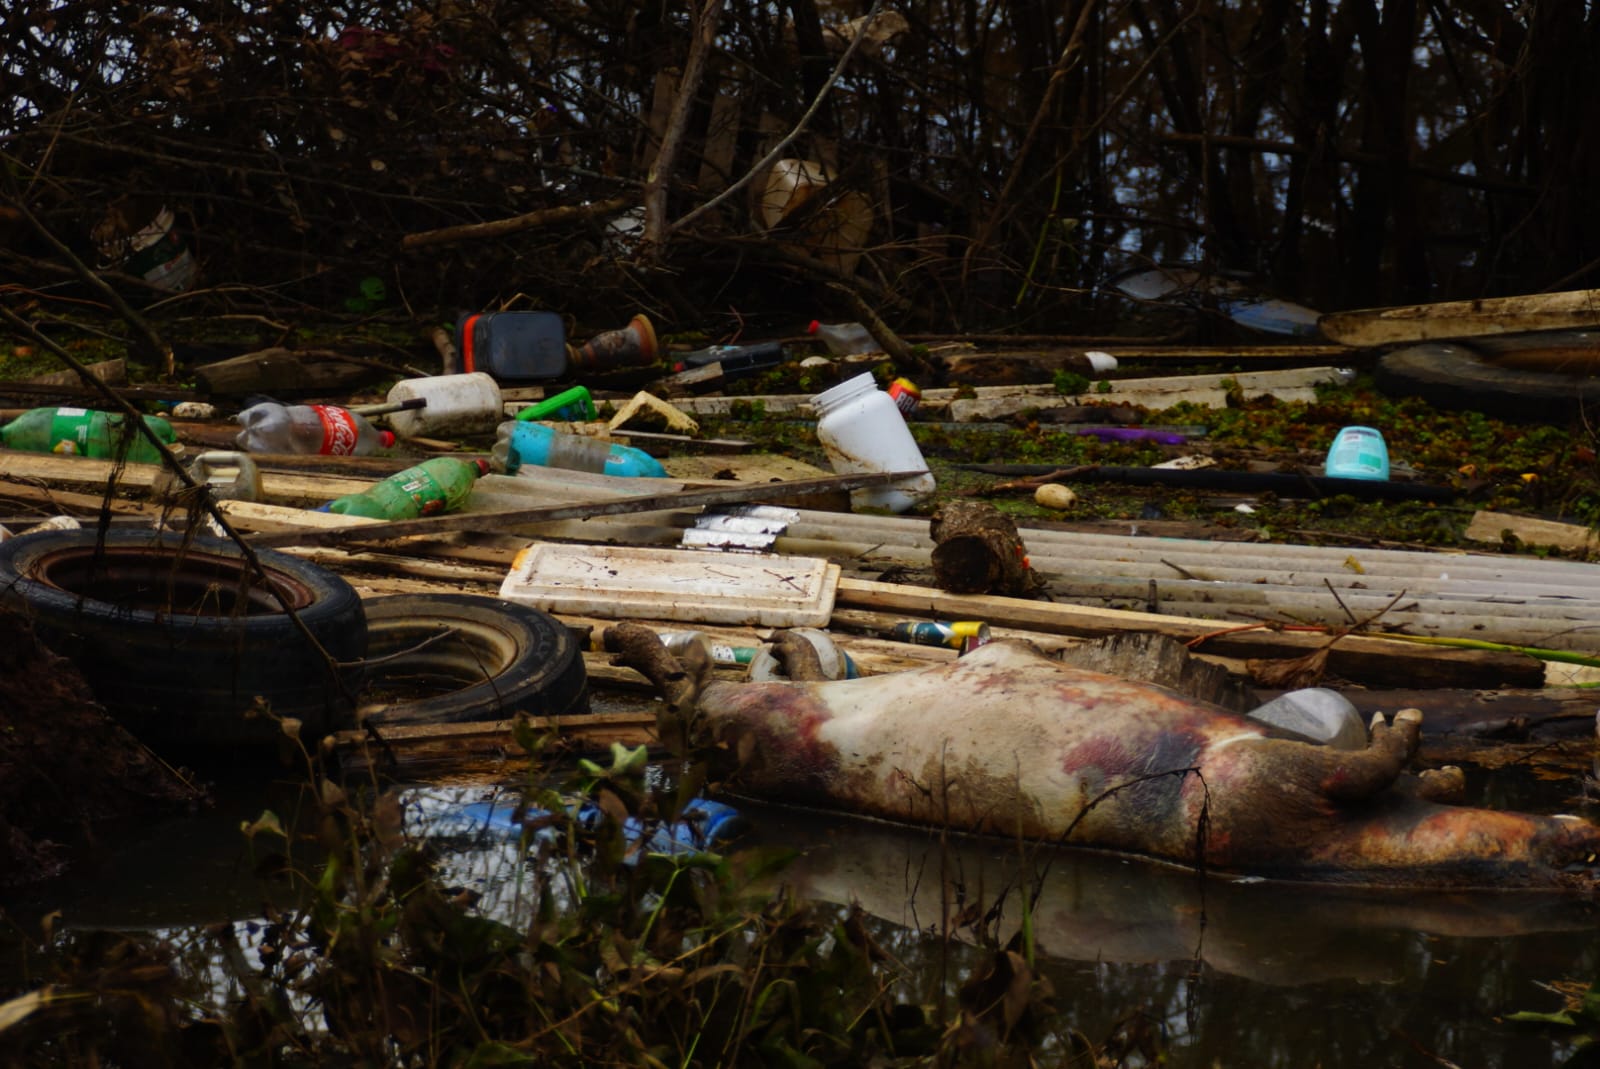 Porco vítima da enchente em meio à destruição em assentamento do MST: pequenos produtores afetados em todo o Rio Grande do Sul (Foto: Natxo Devicente / MST)